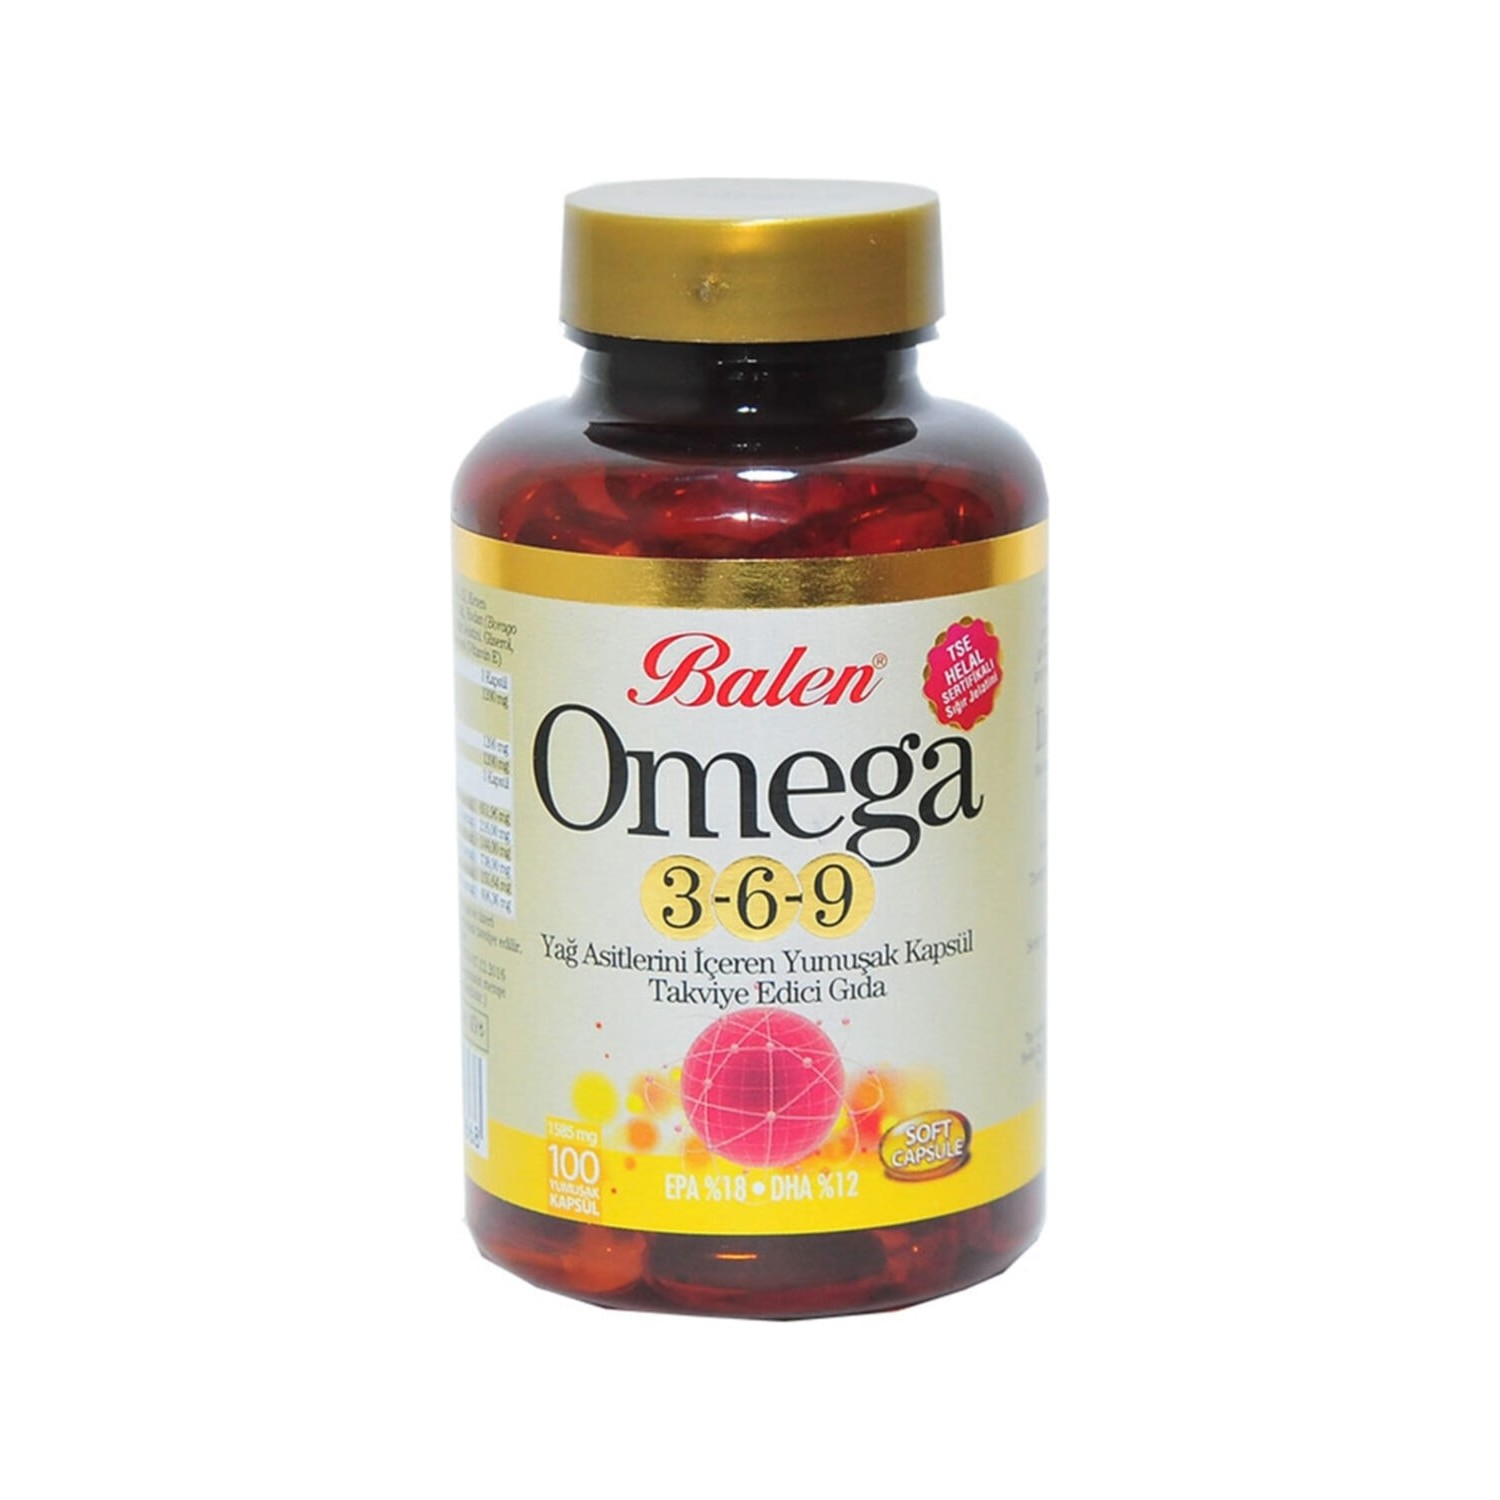 Рыбий жир Balen Omega 3-6-9, 100 капсул, 1585 мг омега 3 6 9 solgar efa 1300 mg omega 3 6 9 120 шт